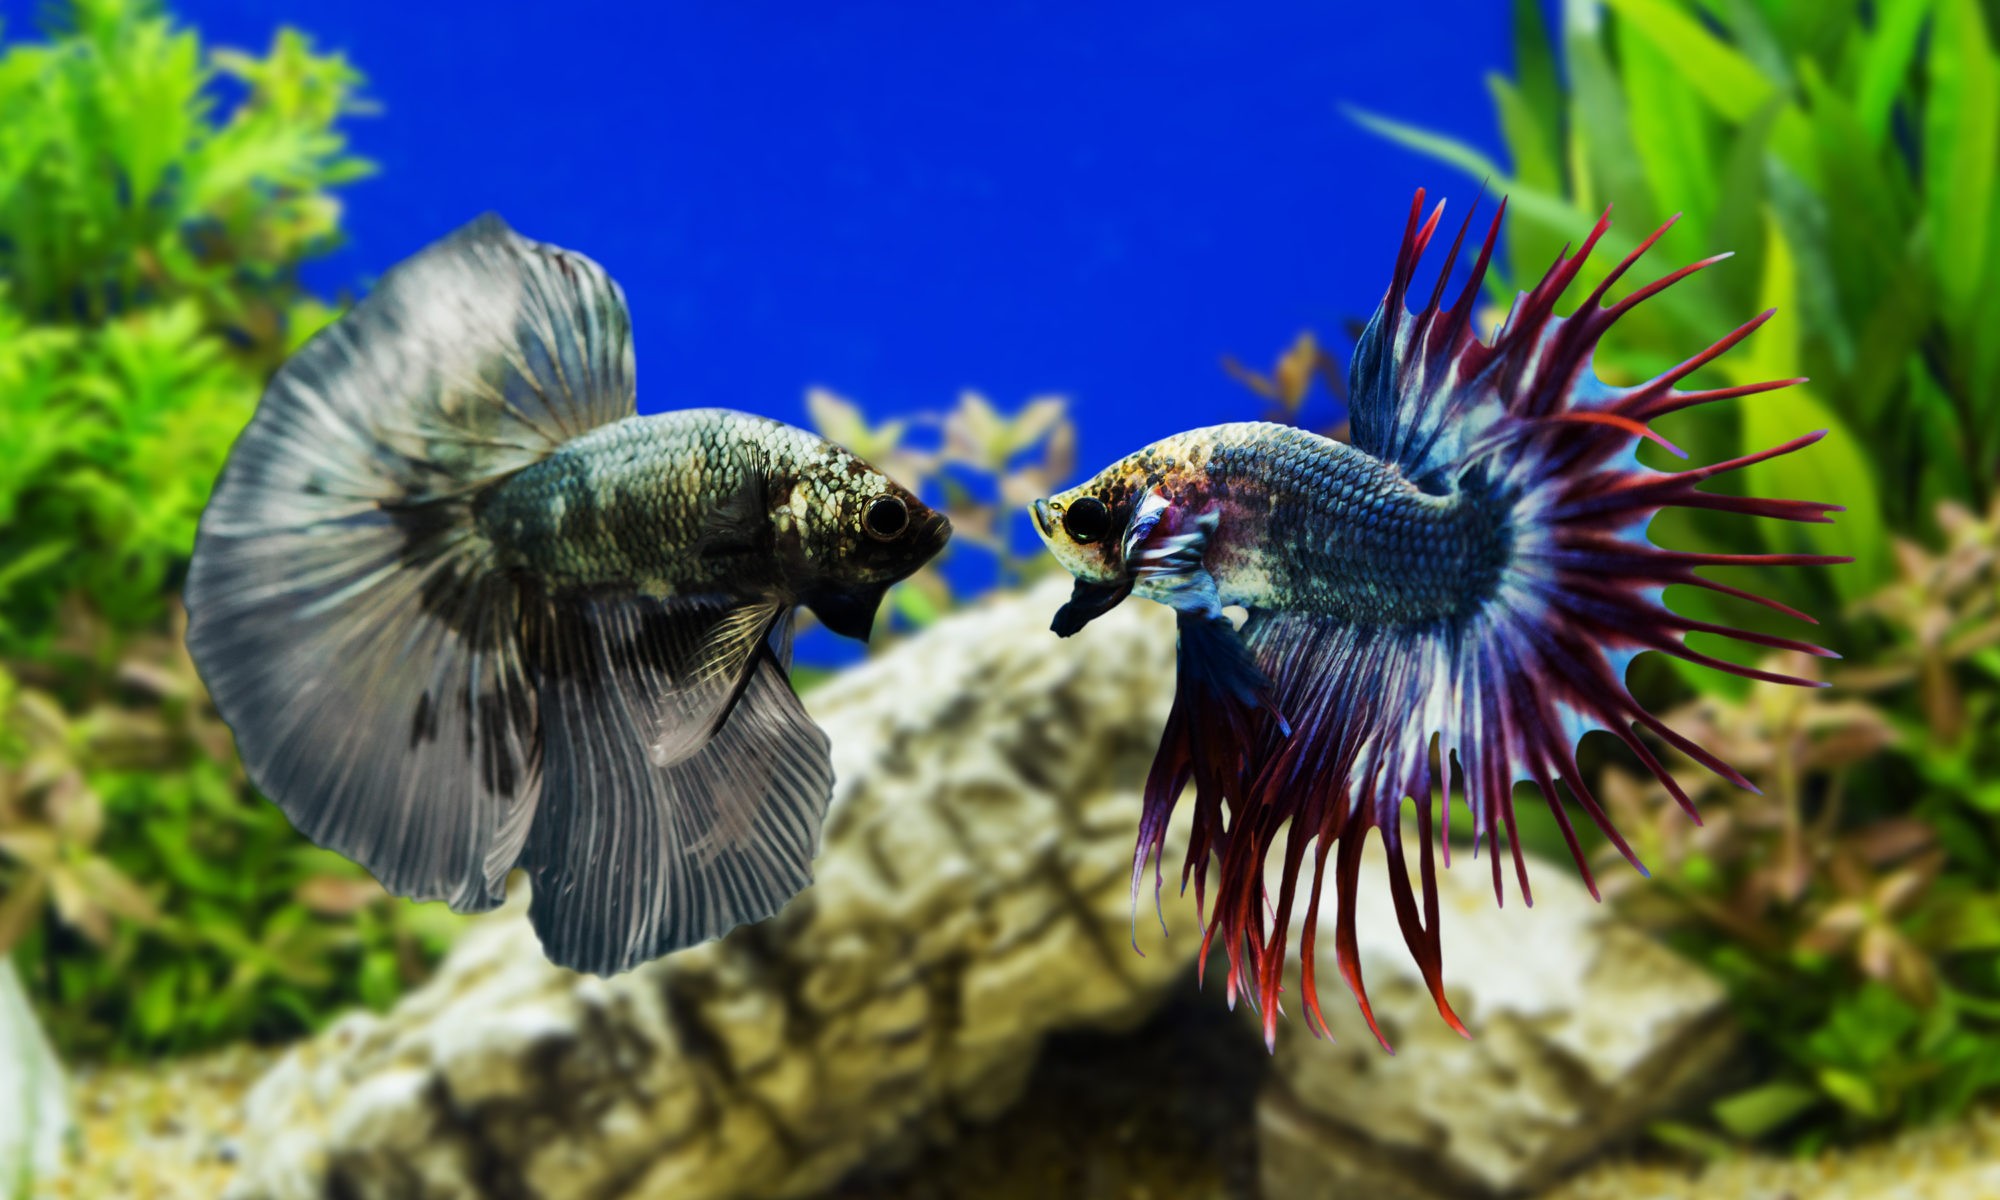 Два Бетта петушка на аквариумном фоне сине-зеленого цвета